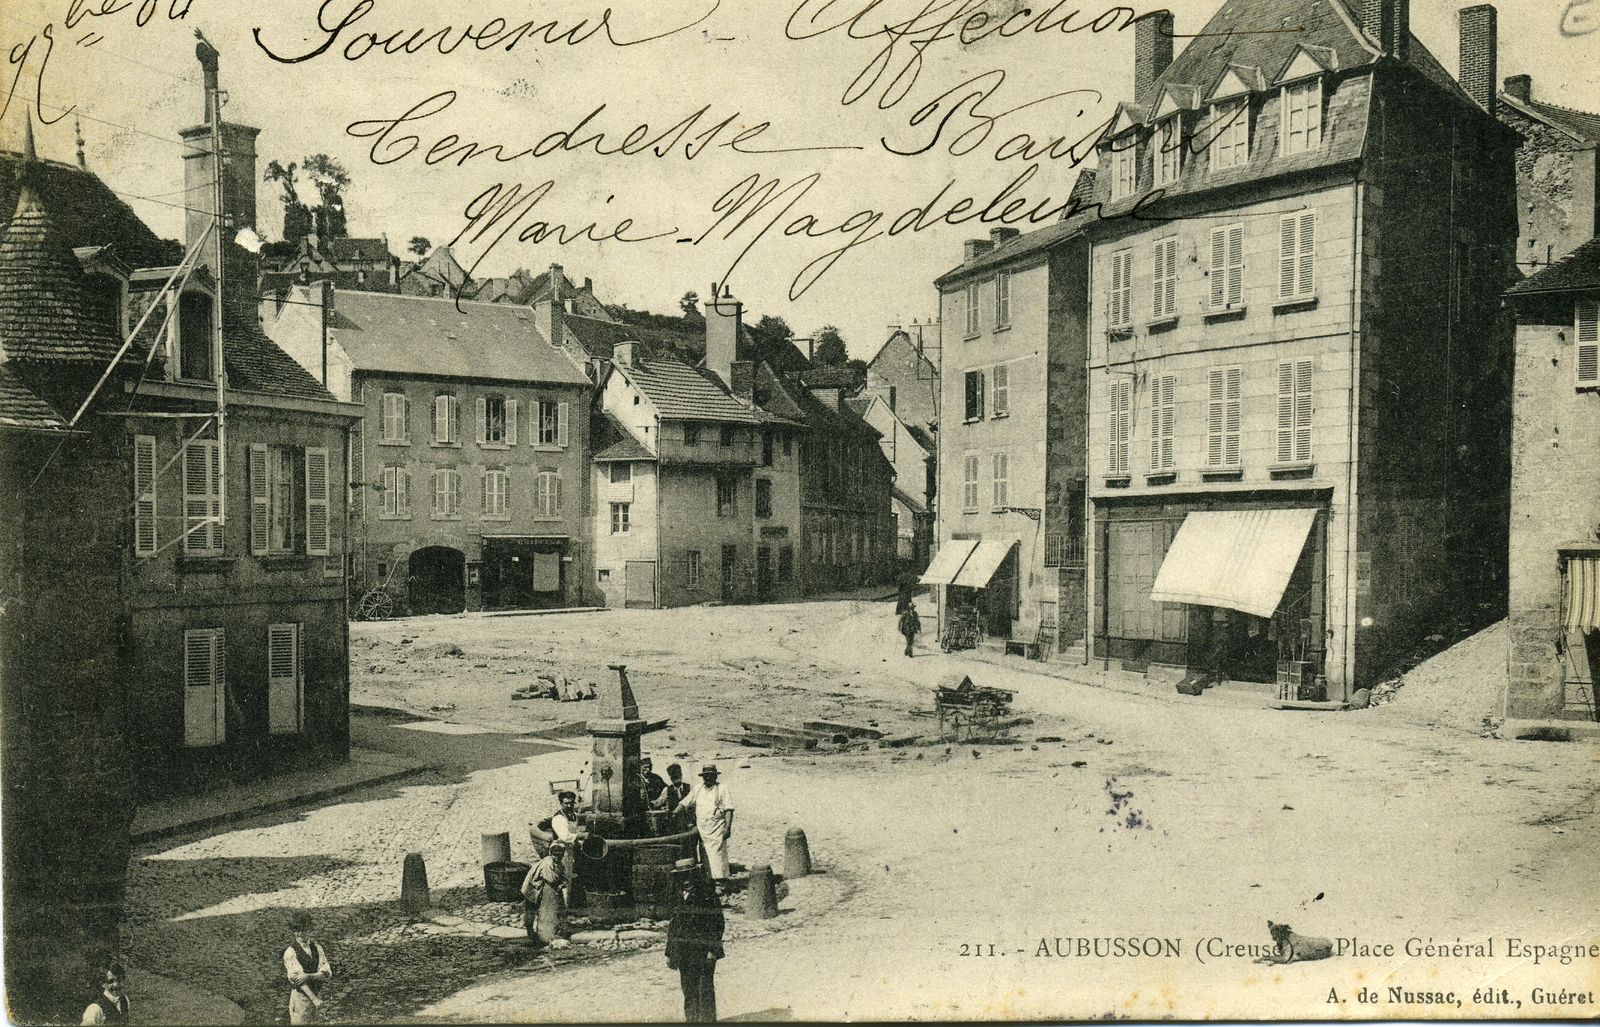 Carte postale représentant la place du général Espagne, au début du 20e siècle, juste après la destruction de l'îlot de maisons qui en occupait le nord (AC Aubusson)